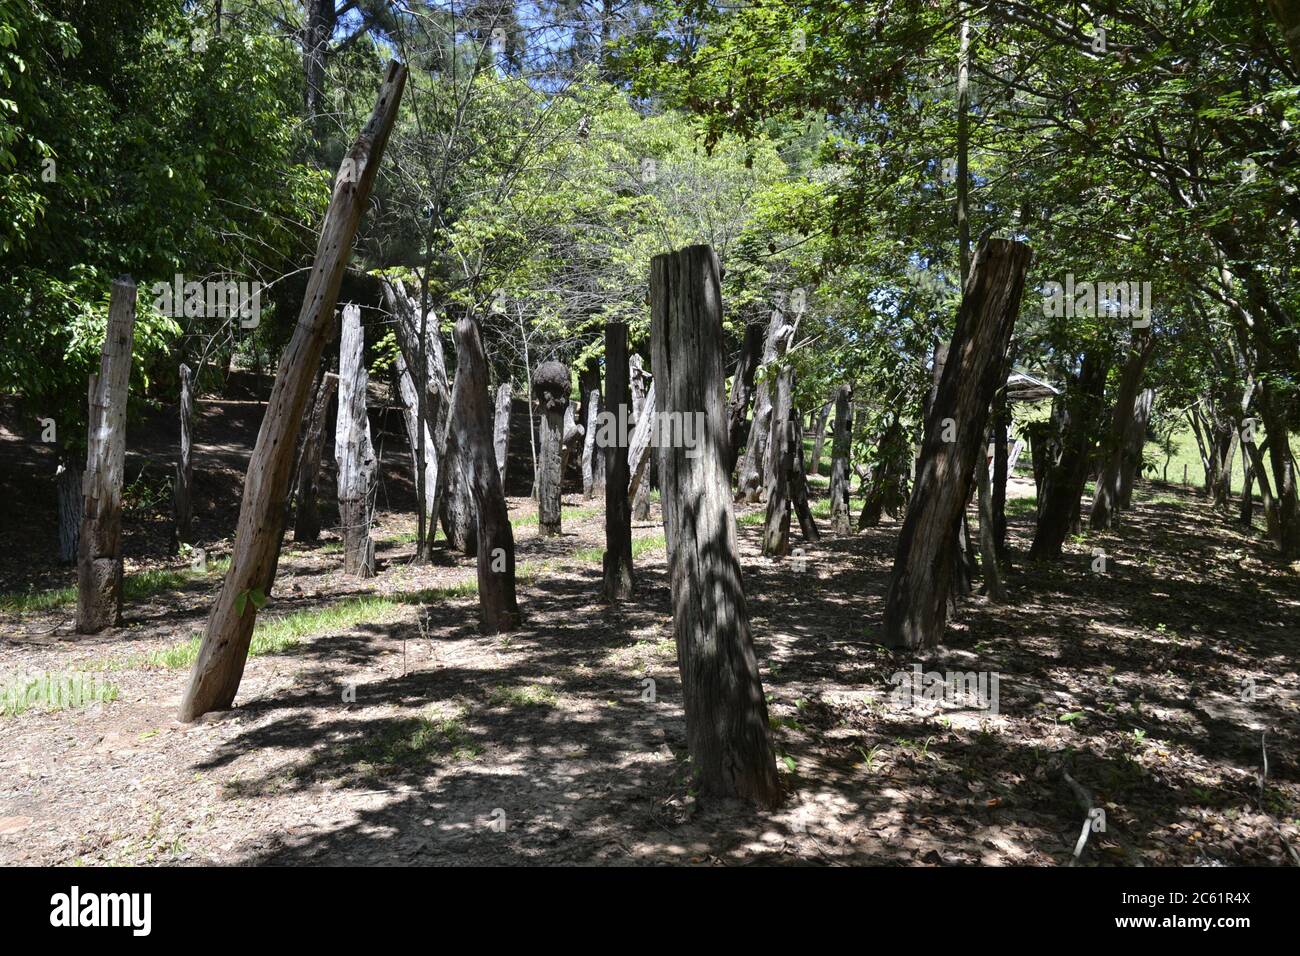 Forêt de rondins ou de troncs, dans une ferme d'écotourisme, à l'intérieur du Brésil, montrant des rondins d'arbres et de végétation, Brésil, Amérique du Sud Banque D'Images